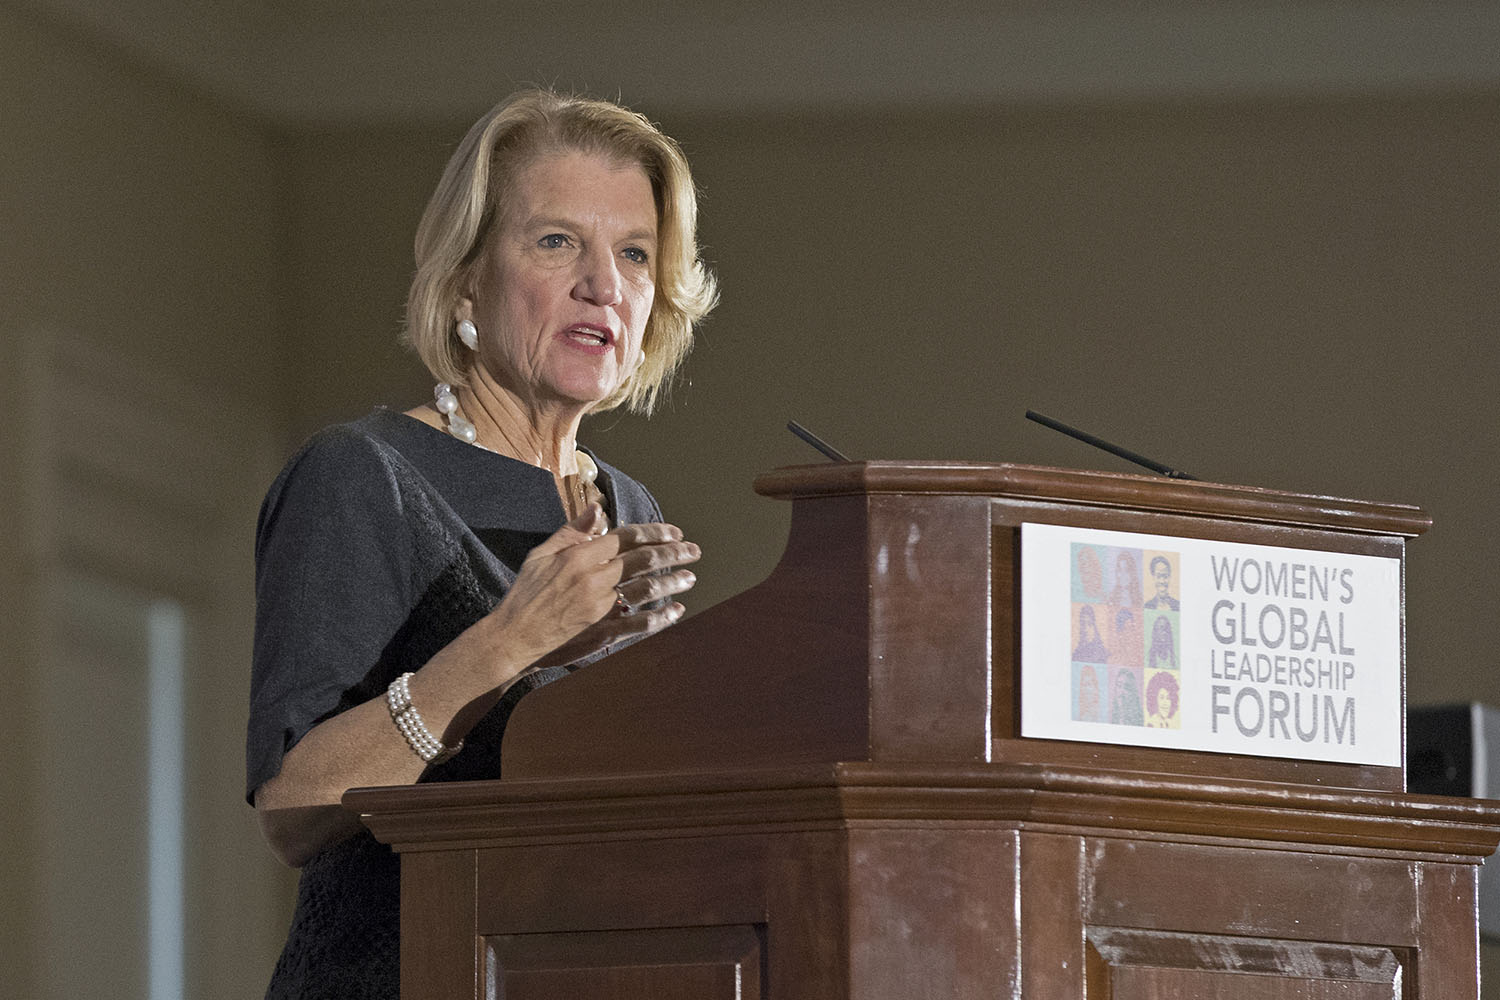 Republican U.S. Sen. Shelley Moore Capito speaking at a podium